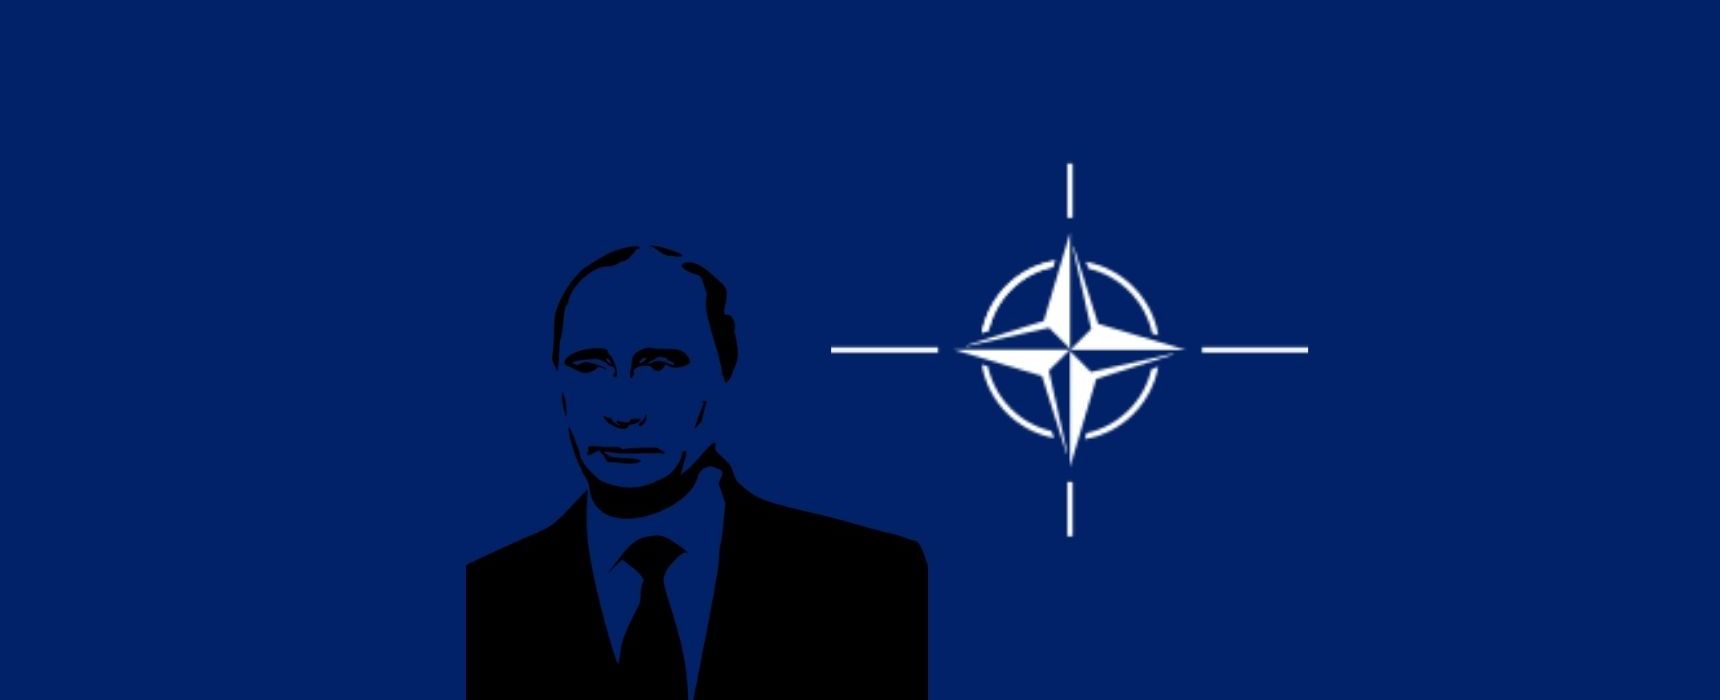 [wt. 21:00] NATO rozmawia z Rosją w sprawie Ukrainy / dr K. Zasztowt / prof. R. Rybkowski